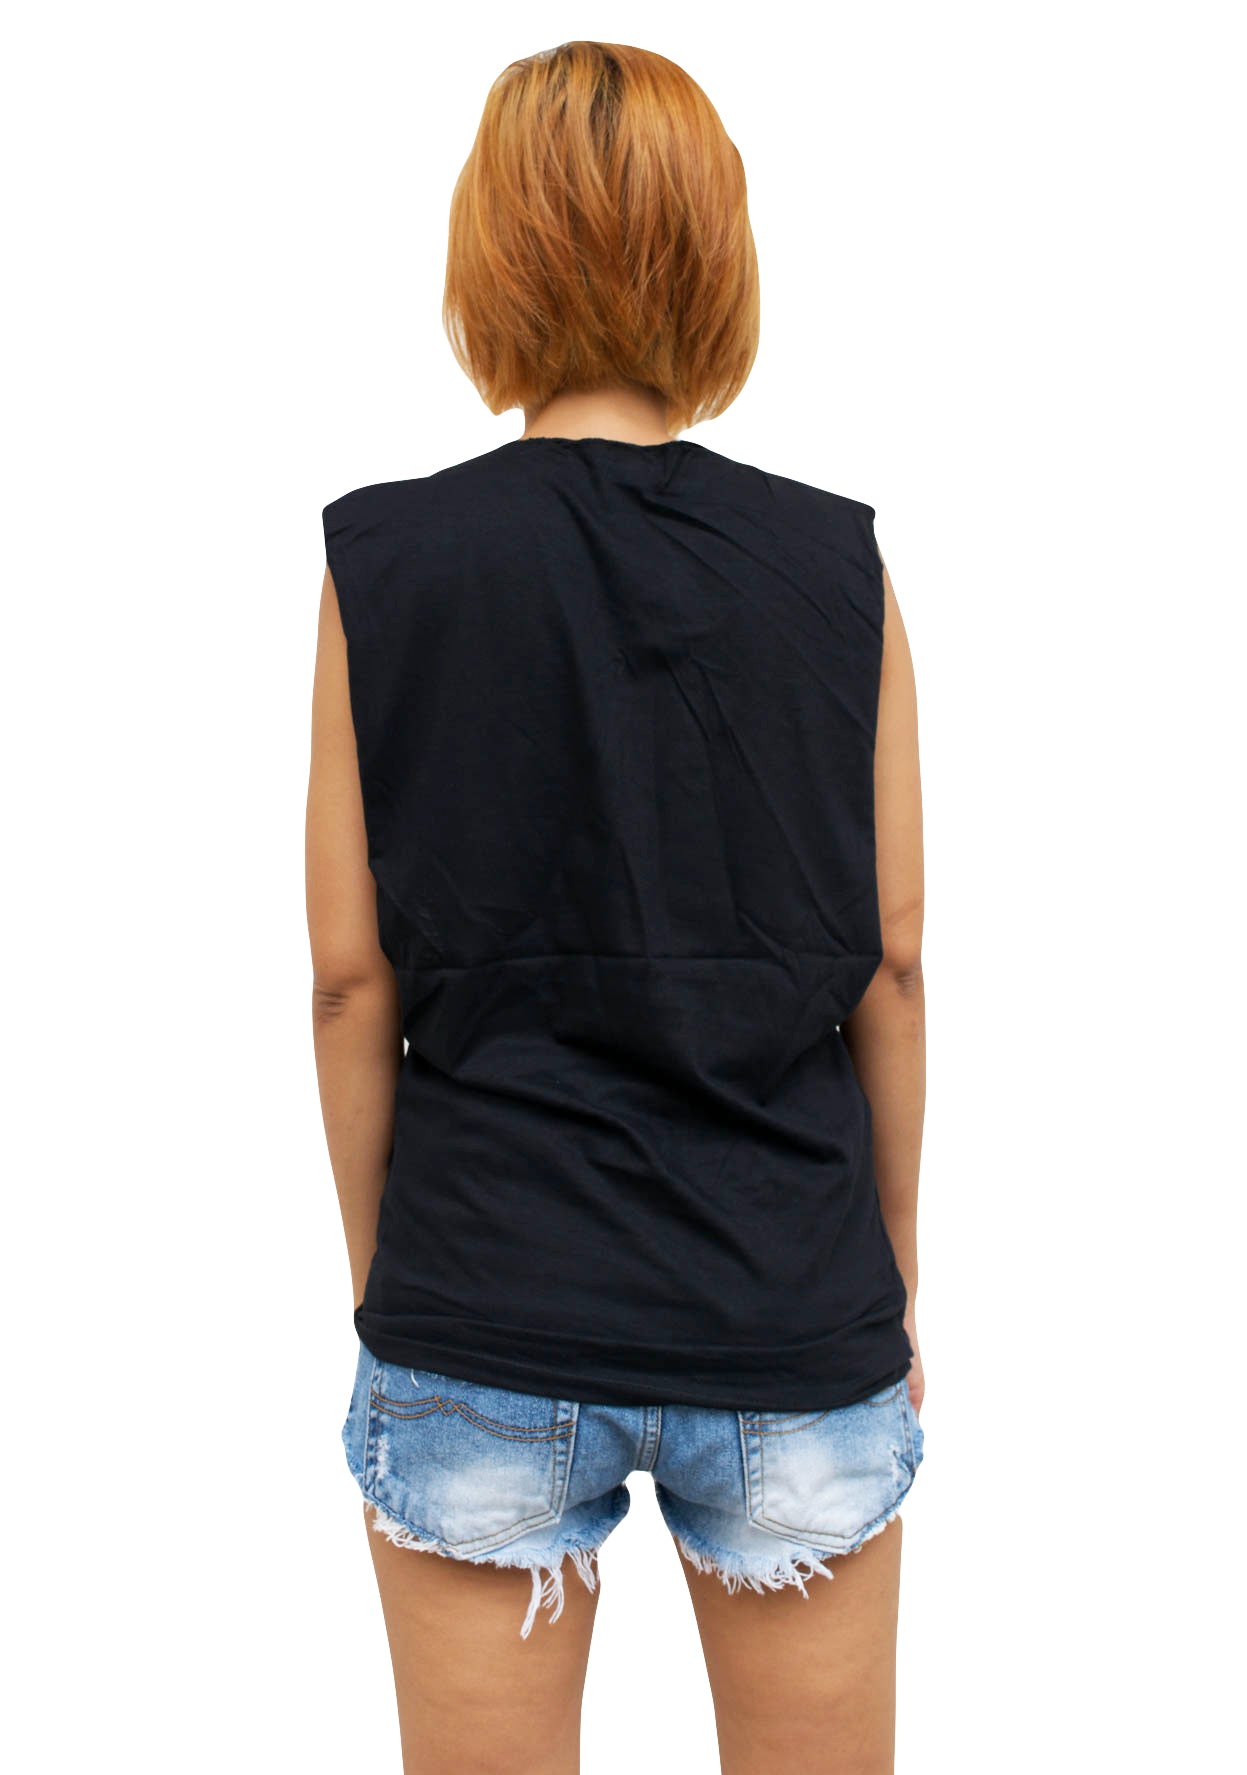 Ladies Bauhaus Vest Tank-Top Singlet Sleeveless T-Shirt